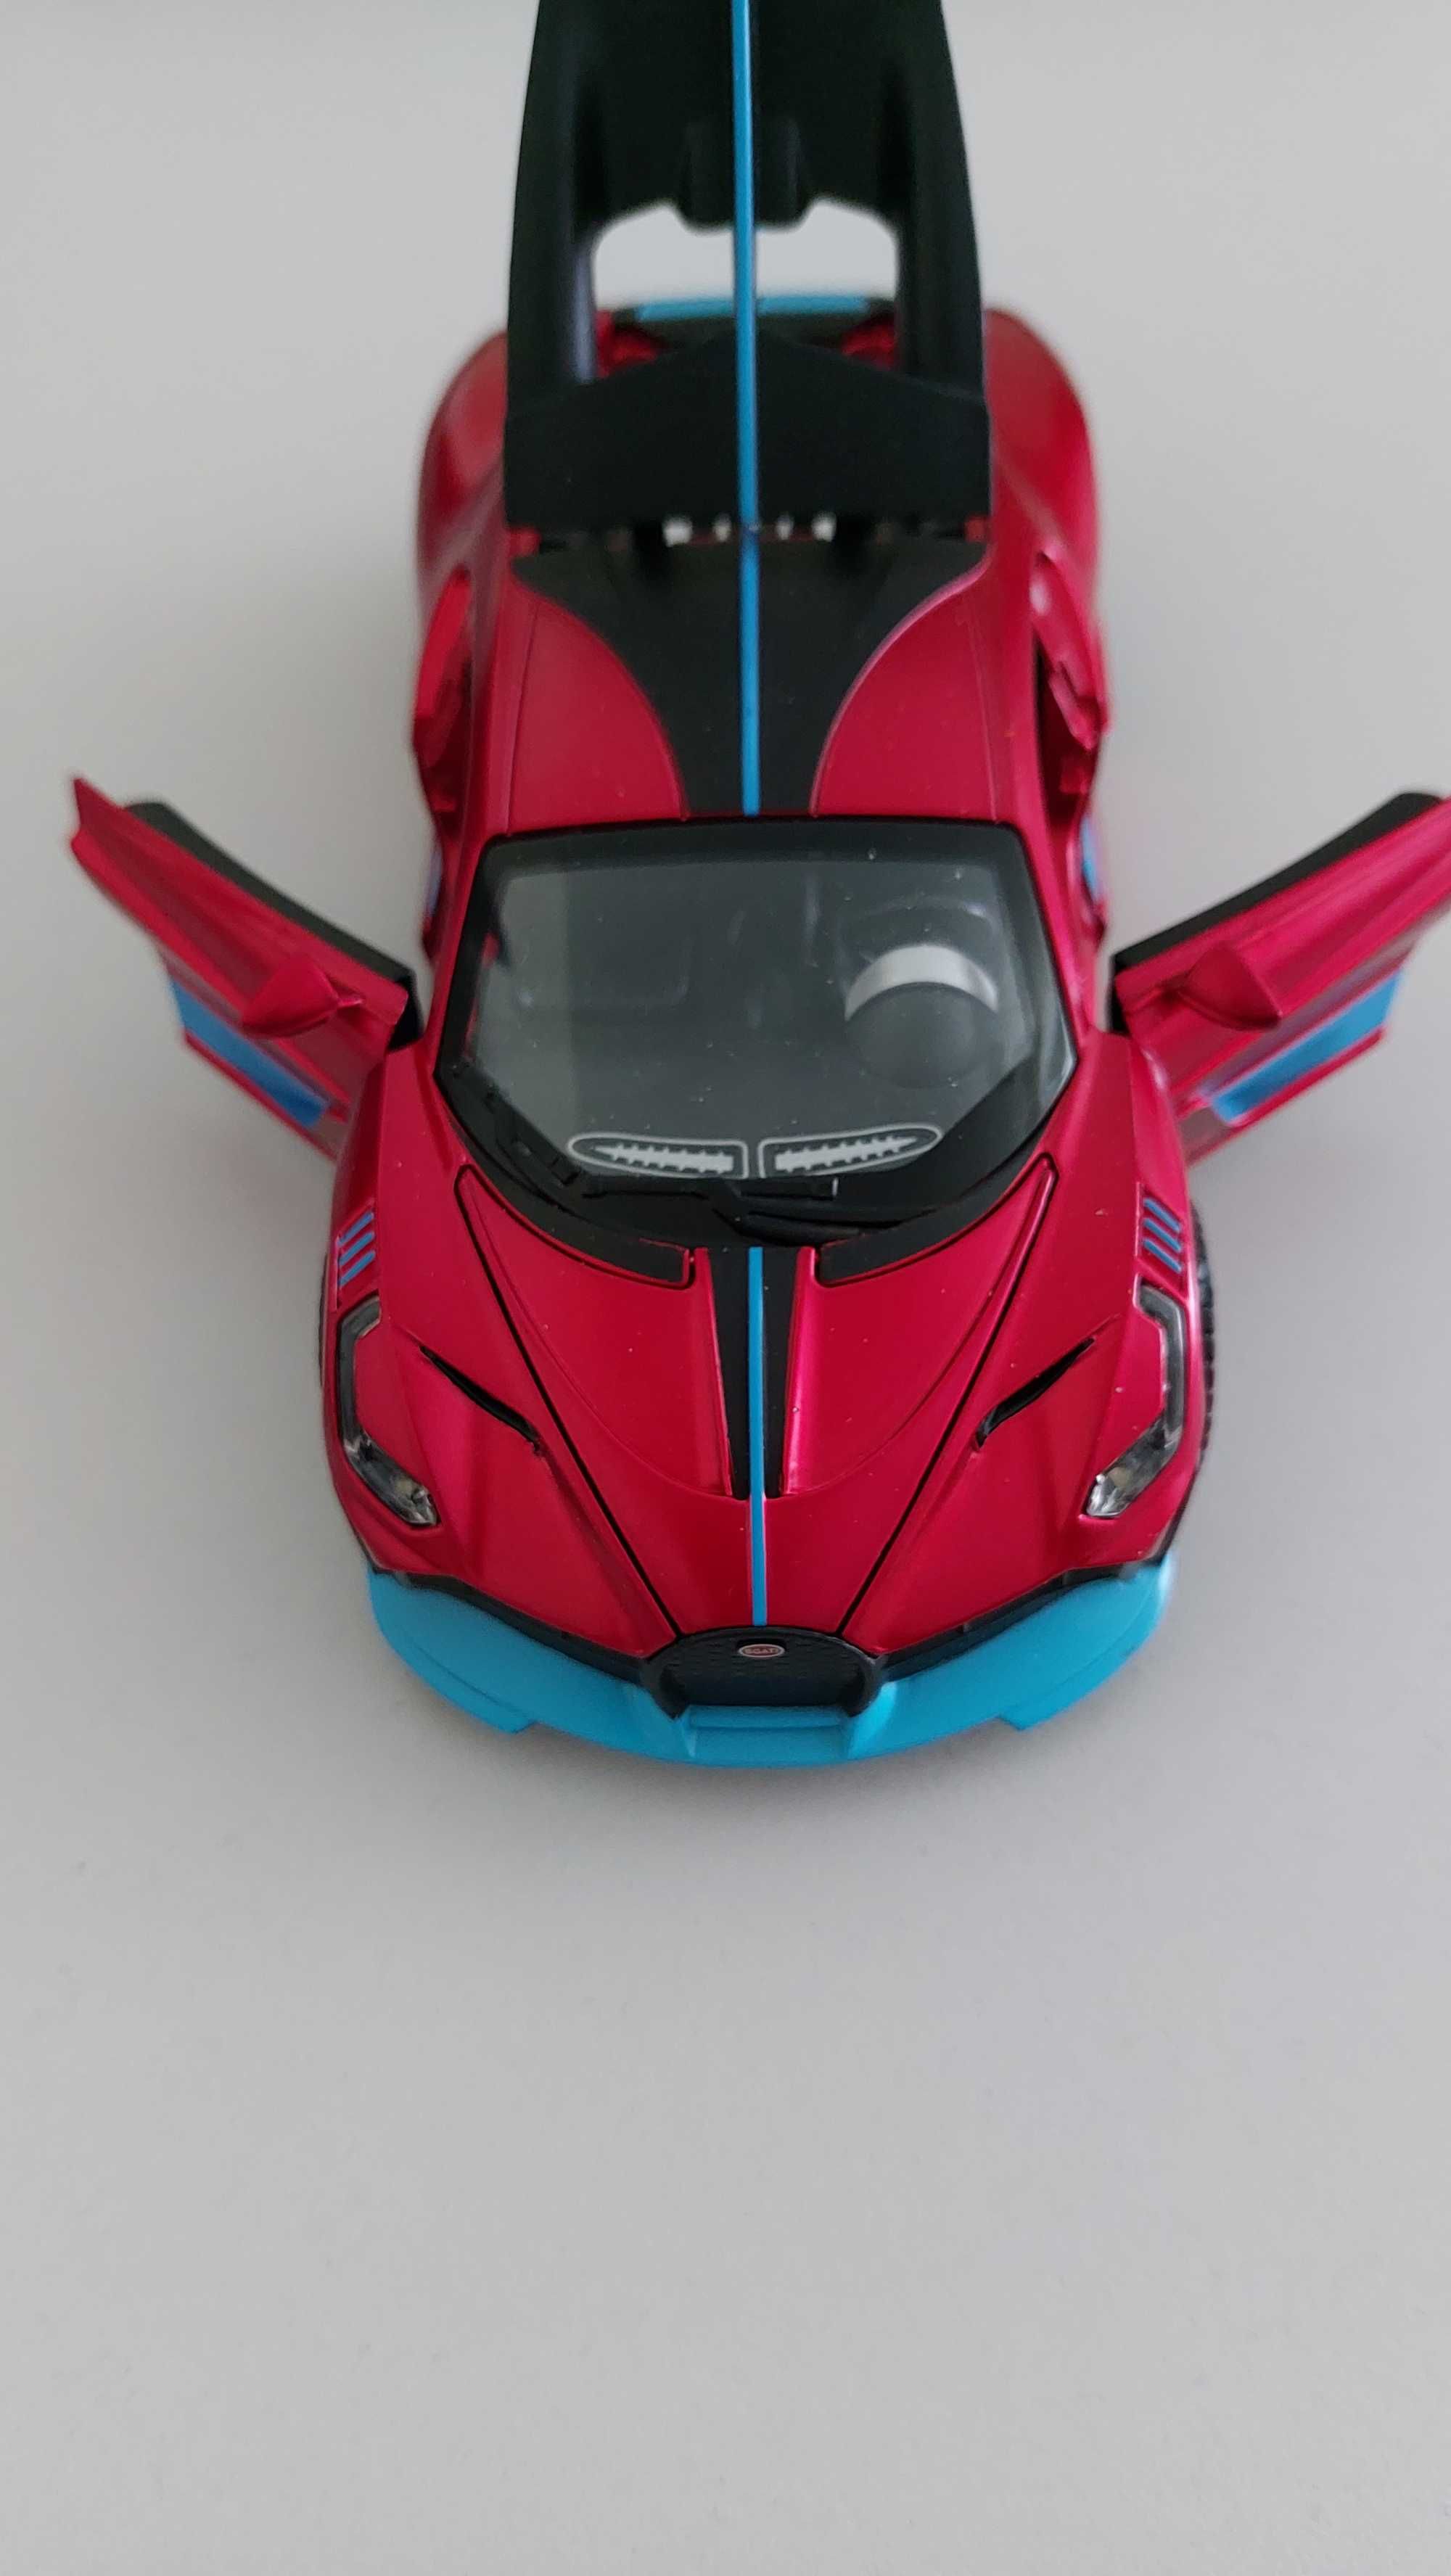 Метална играчка на кола Bugatti Divo 1/32 за деца над 3